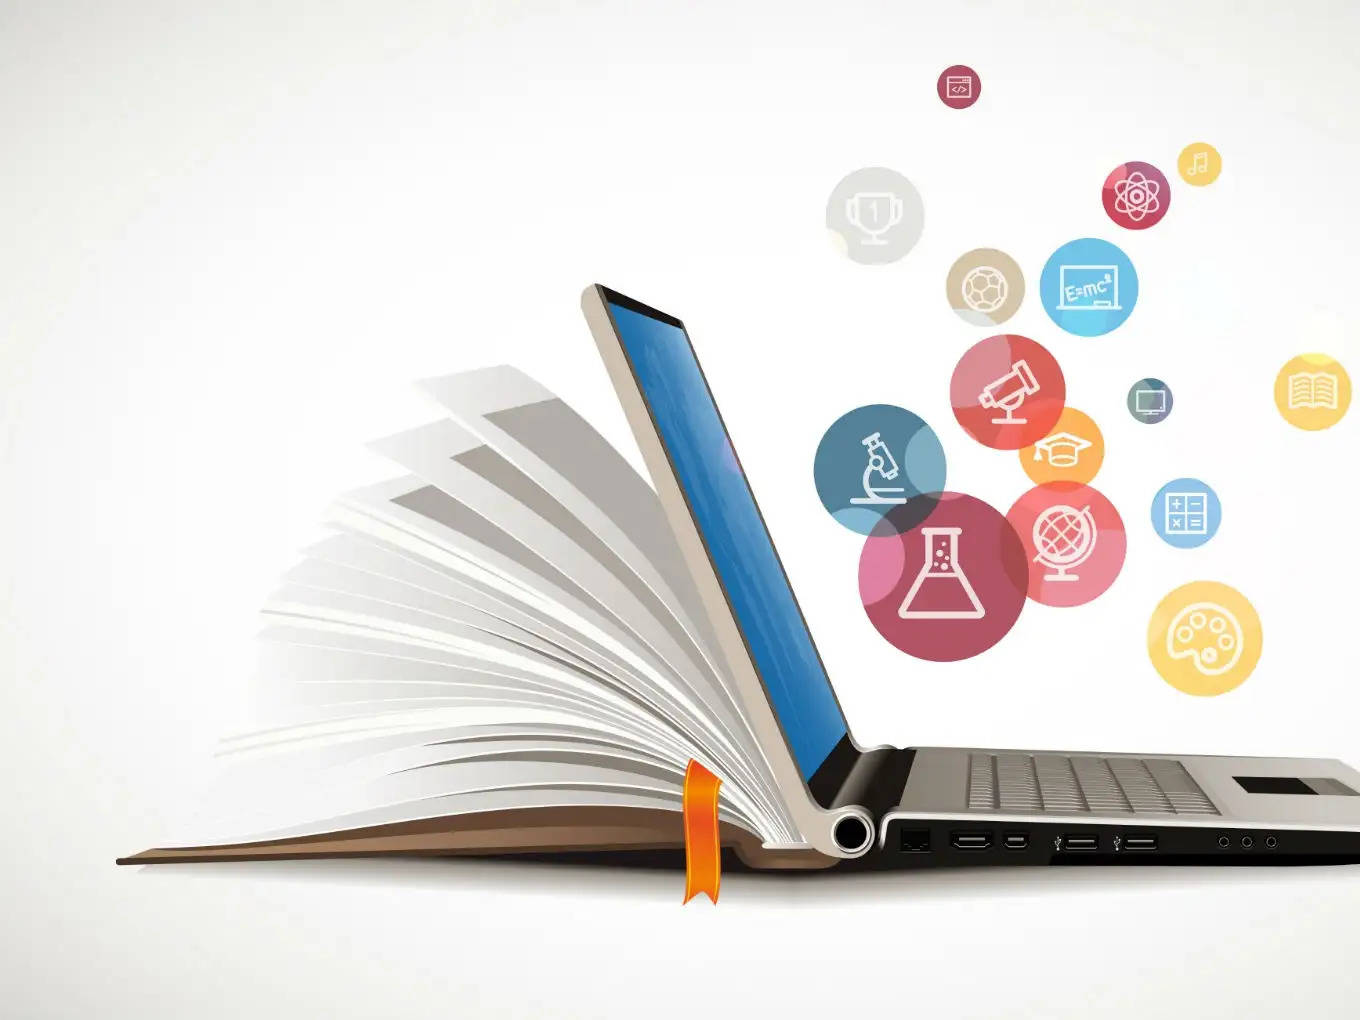 भारत की डिजिटल शिक्षा को बढ़ावा : बजट 2024 में शिक्षा प्रौद्योगिकी के लिए शीर्ष प्राथमिकताएं